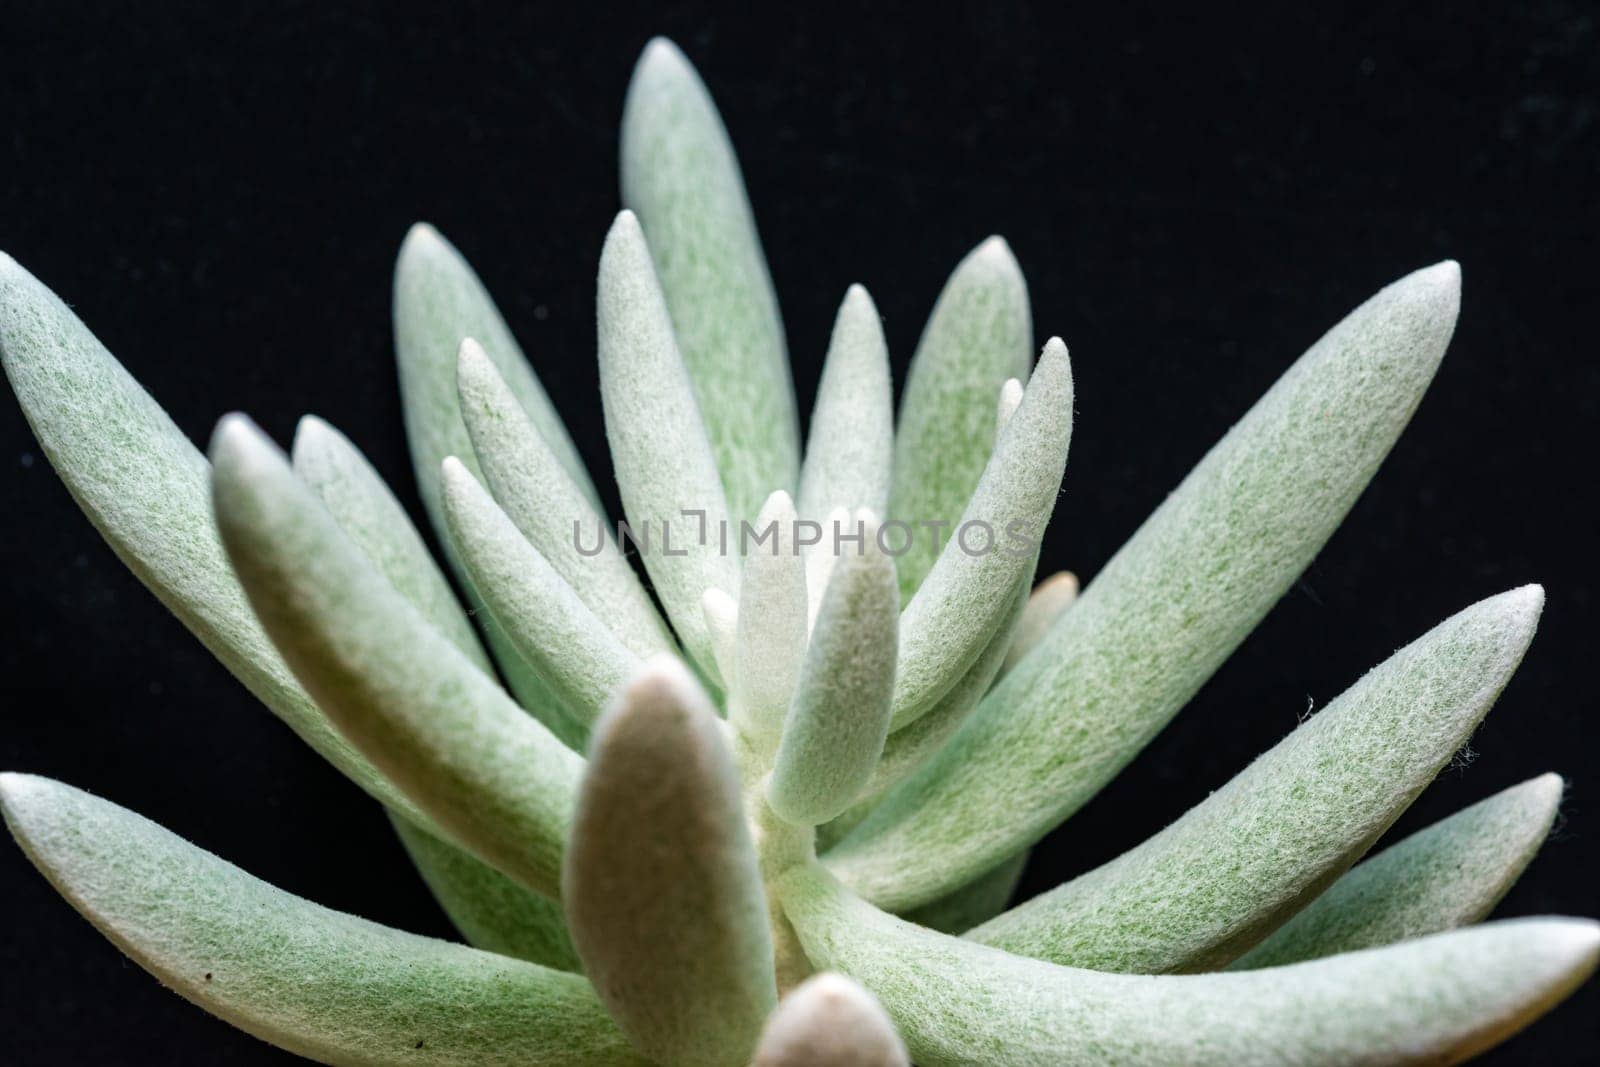 Senecio scaposus - succulent plant with thick succulent leaves